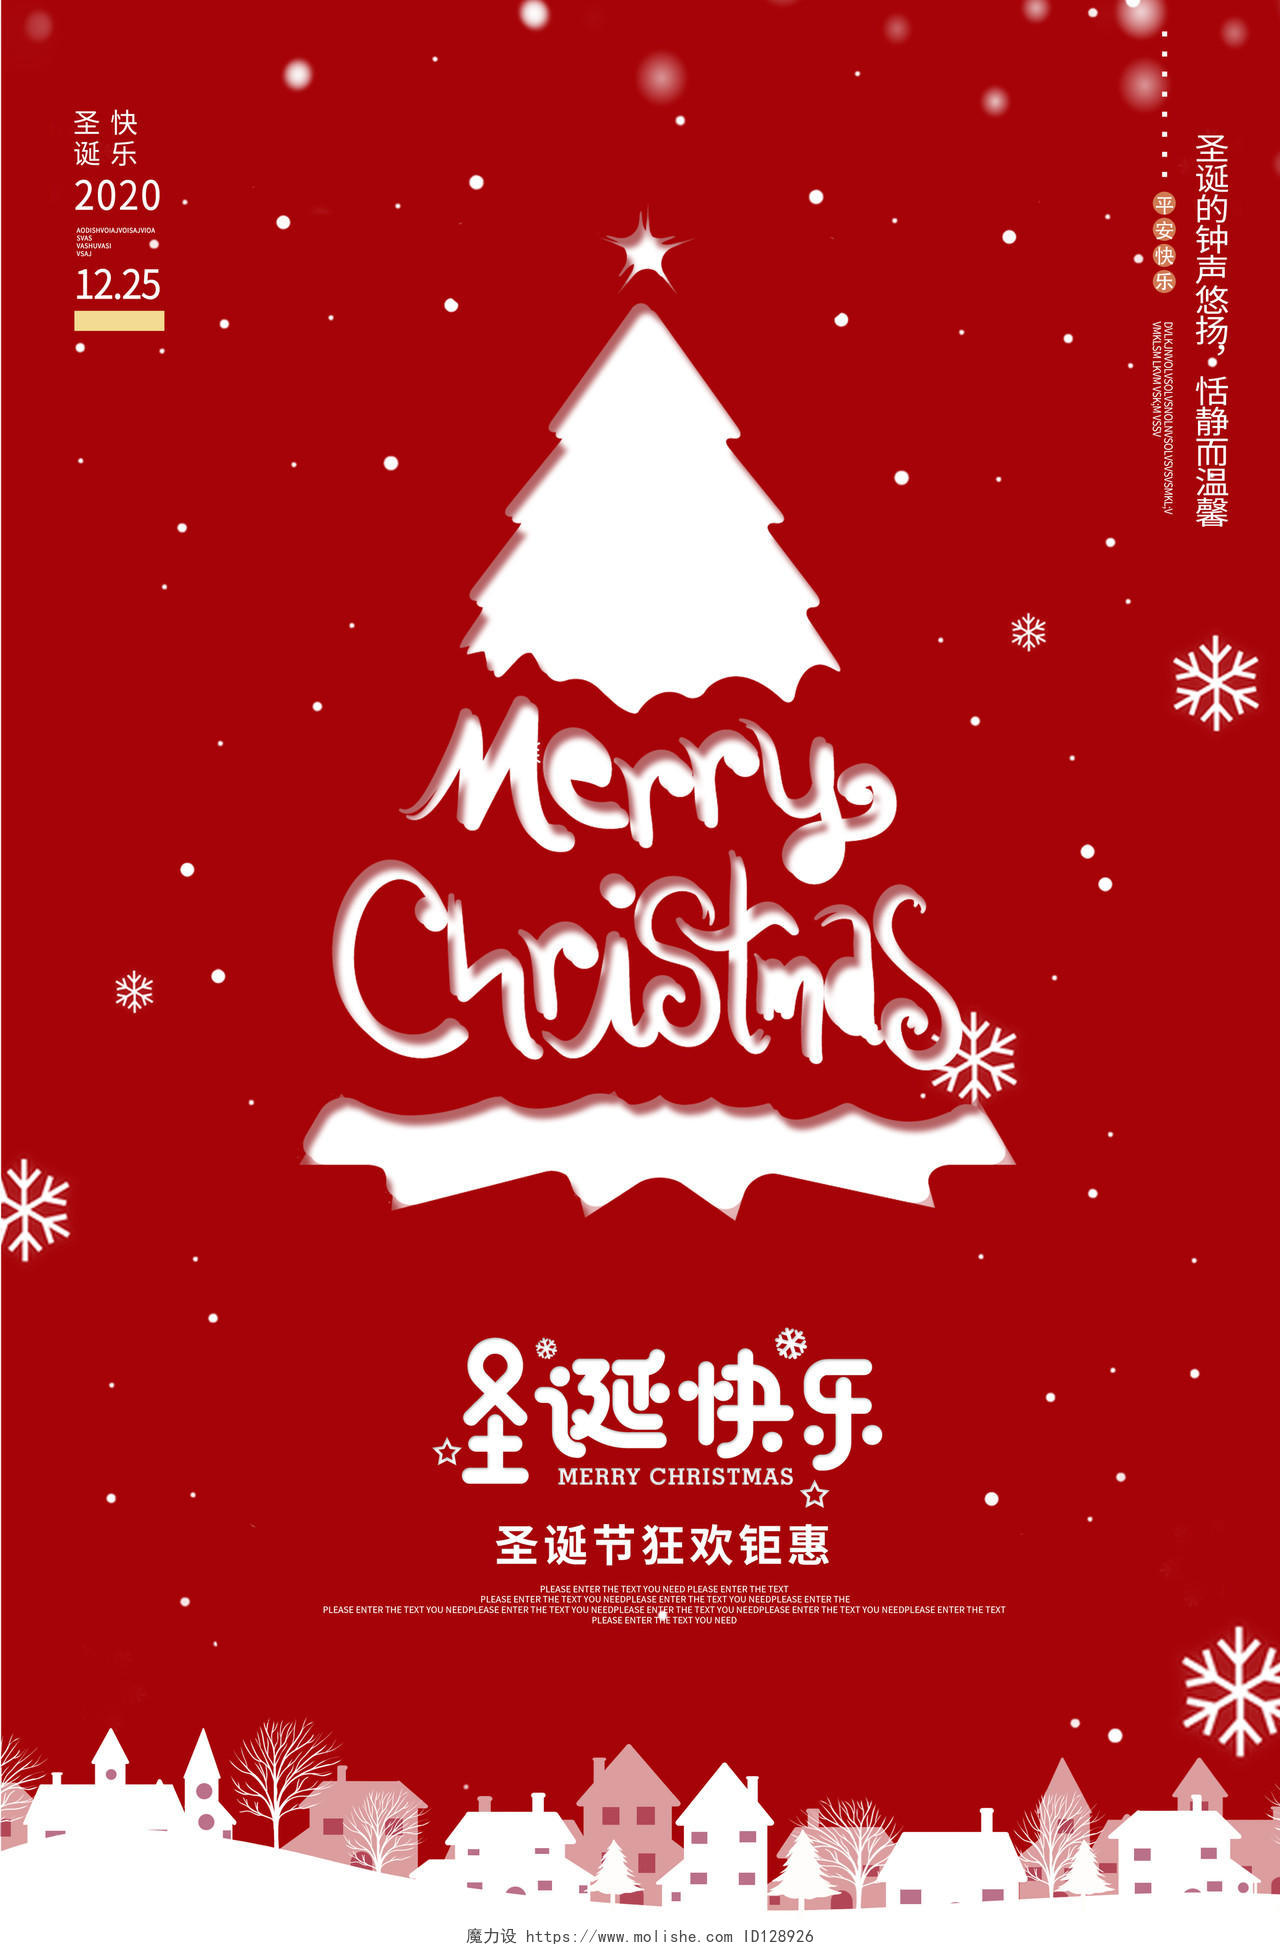 2020圣诞快乐圣诞节促销海报设计